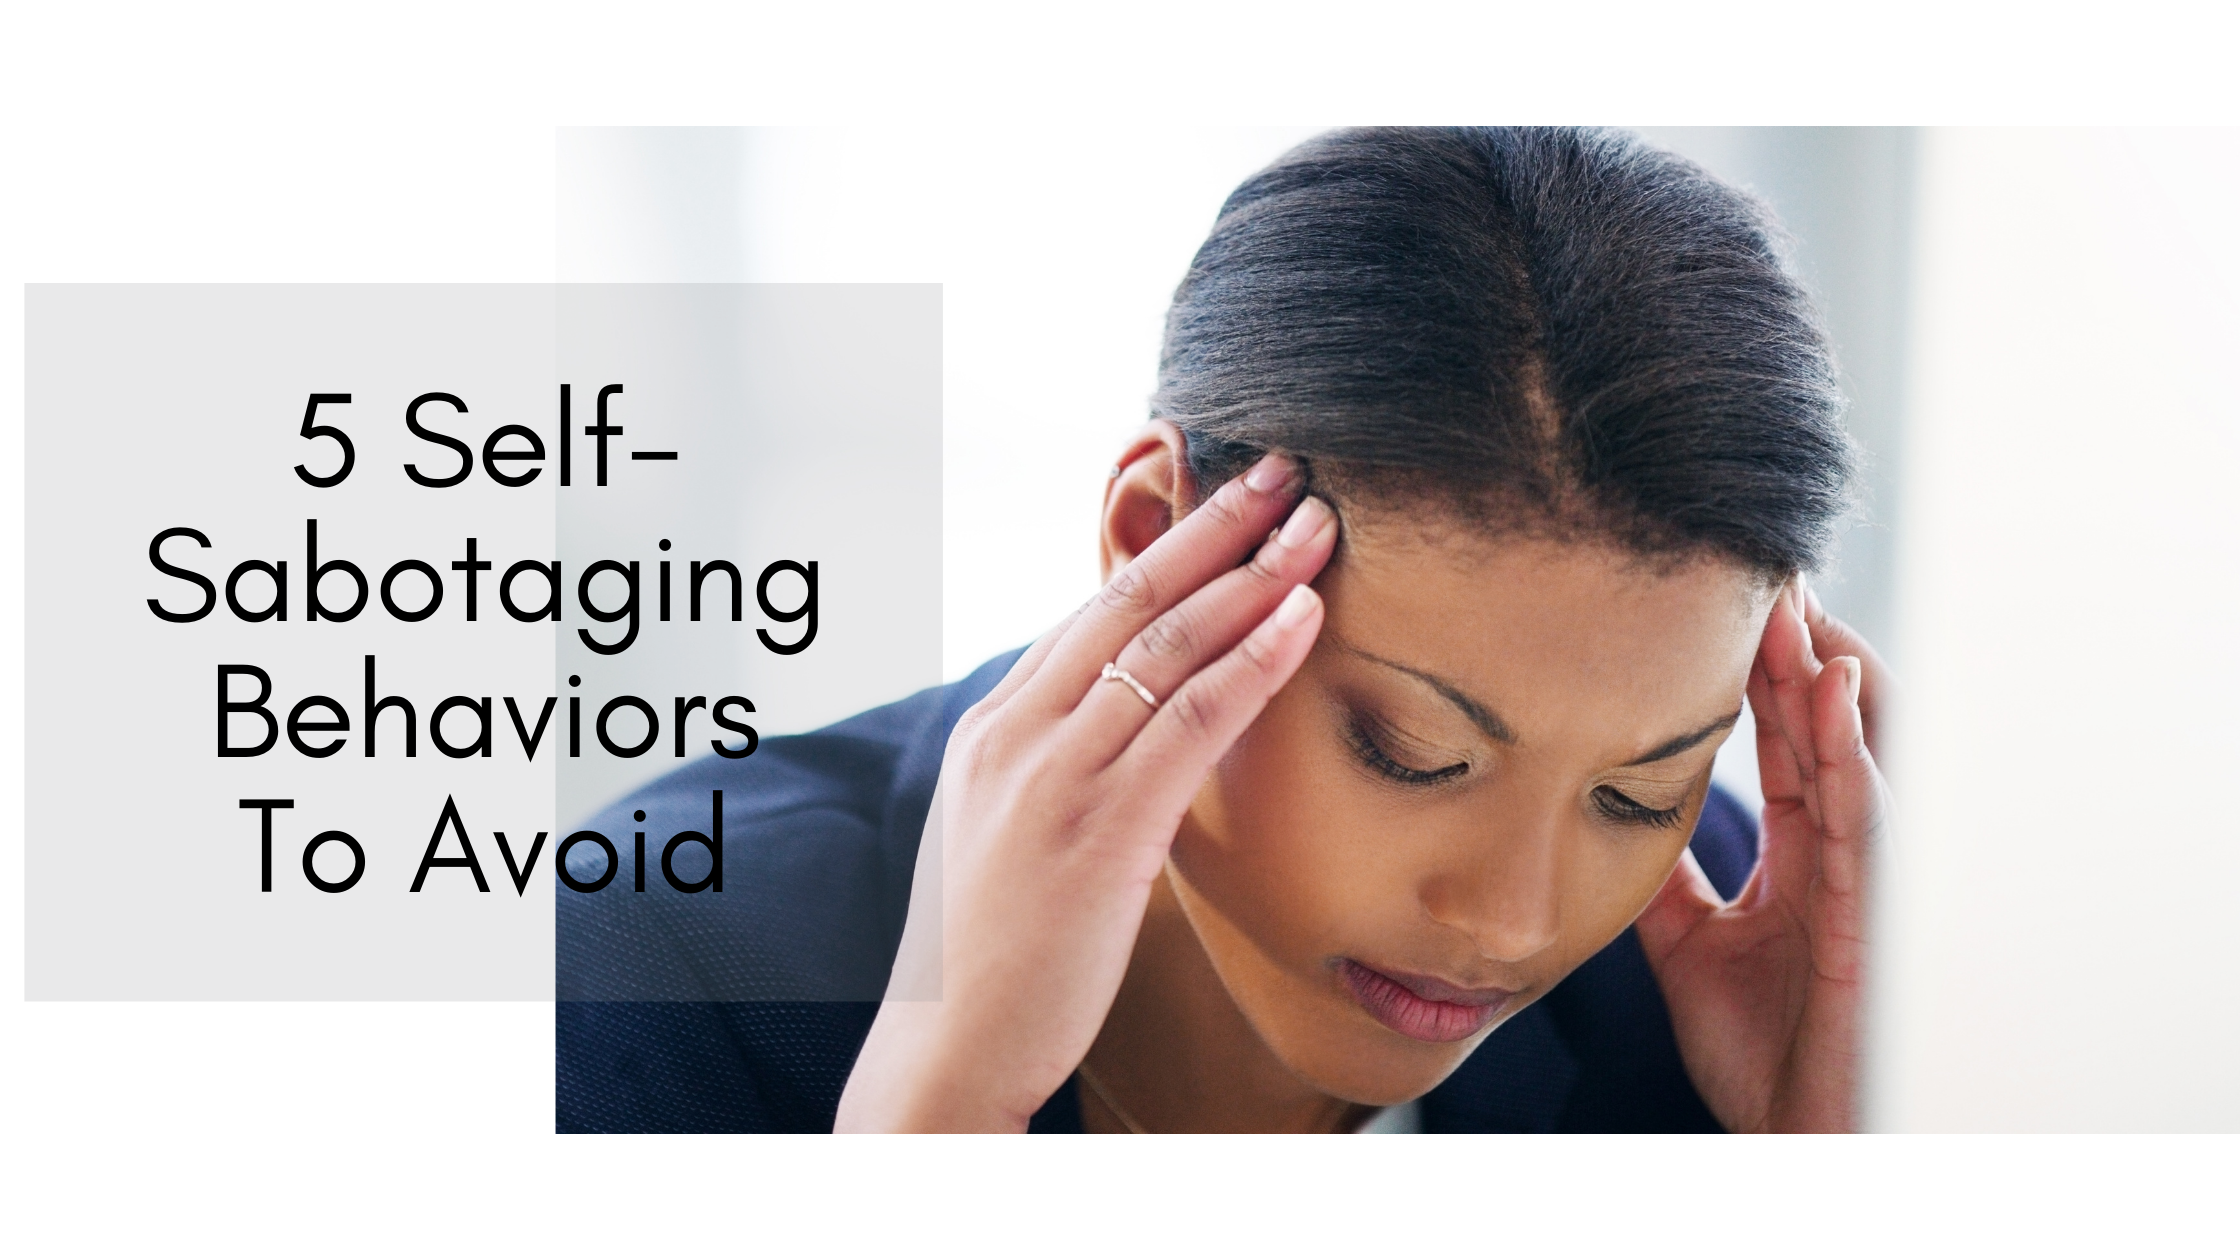 5 Self-Sabotaging Behaviors To Avoid